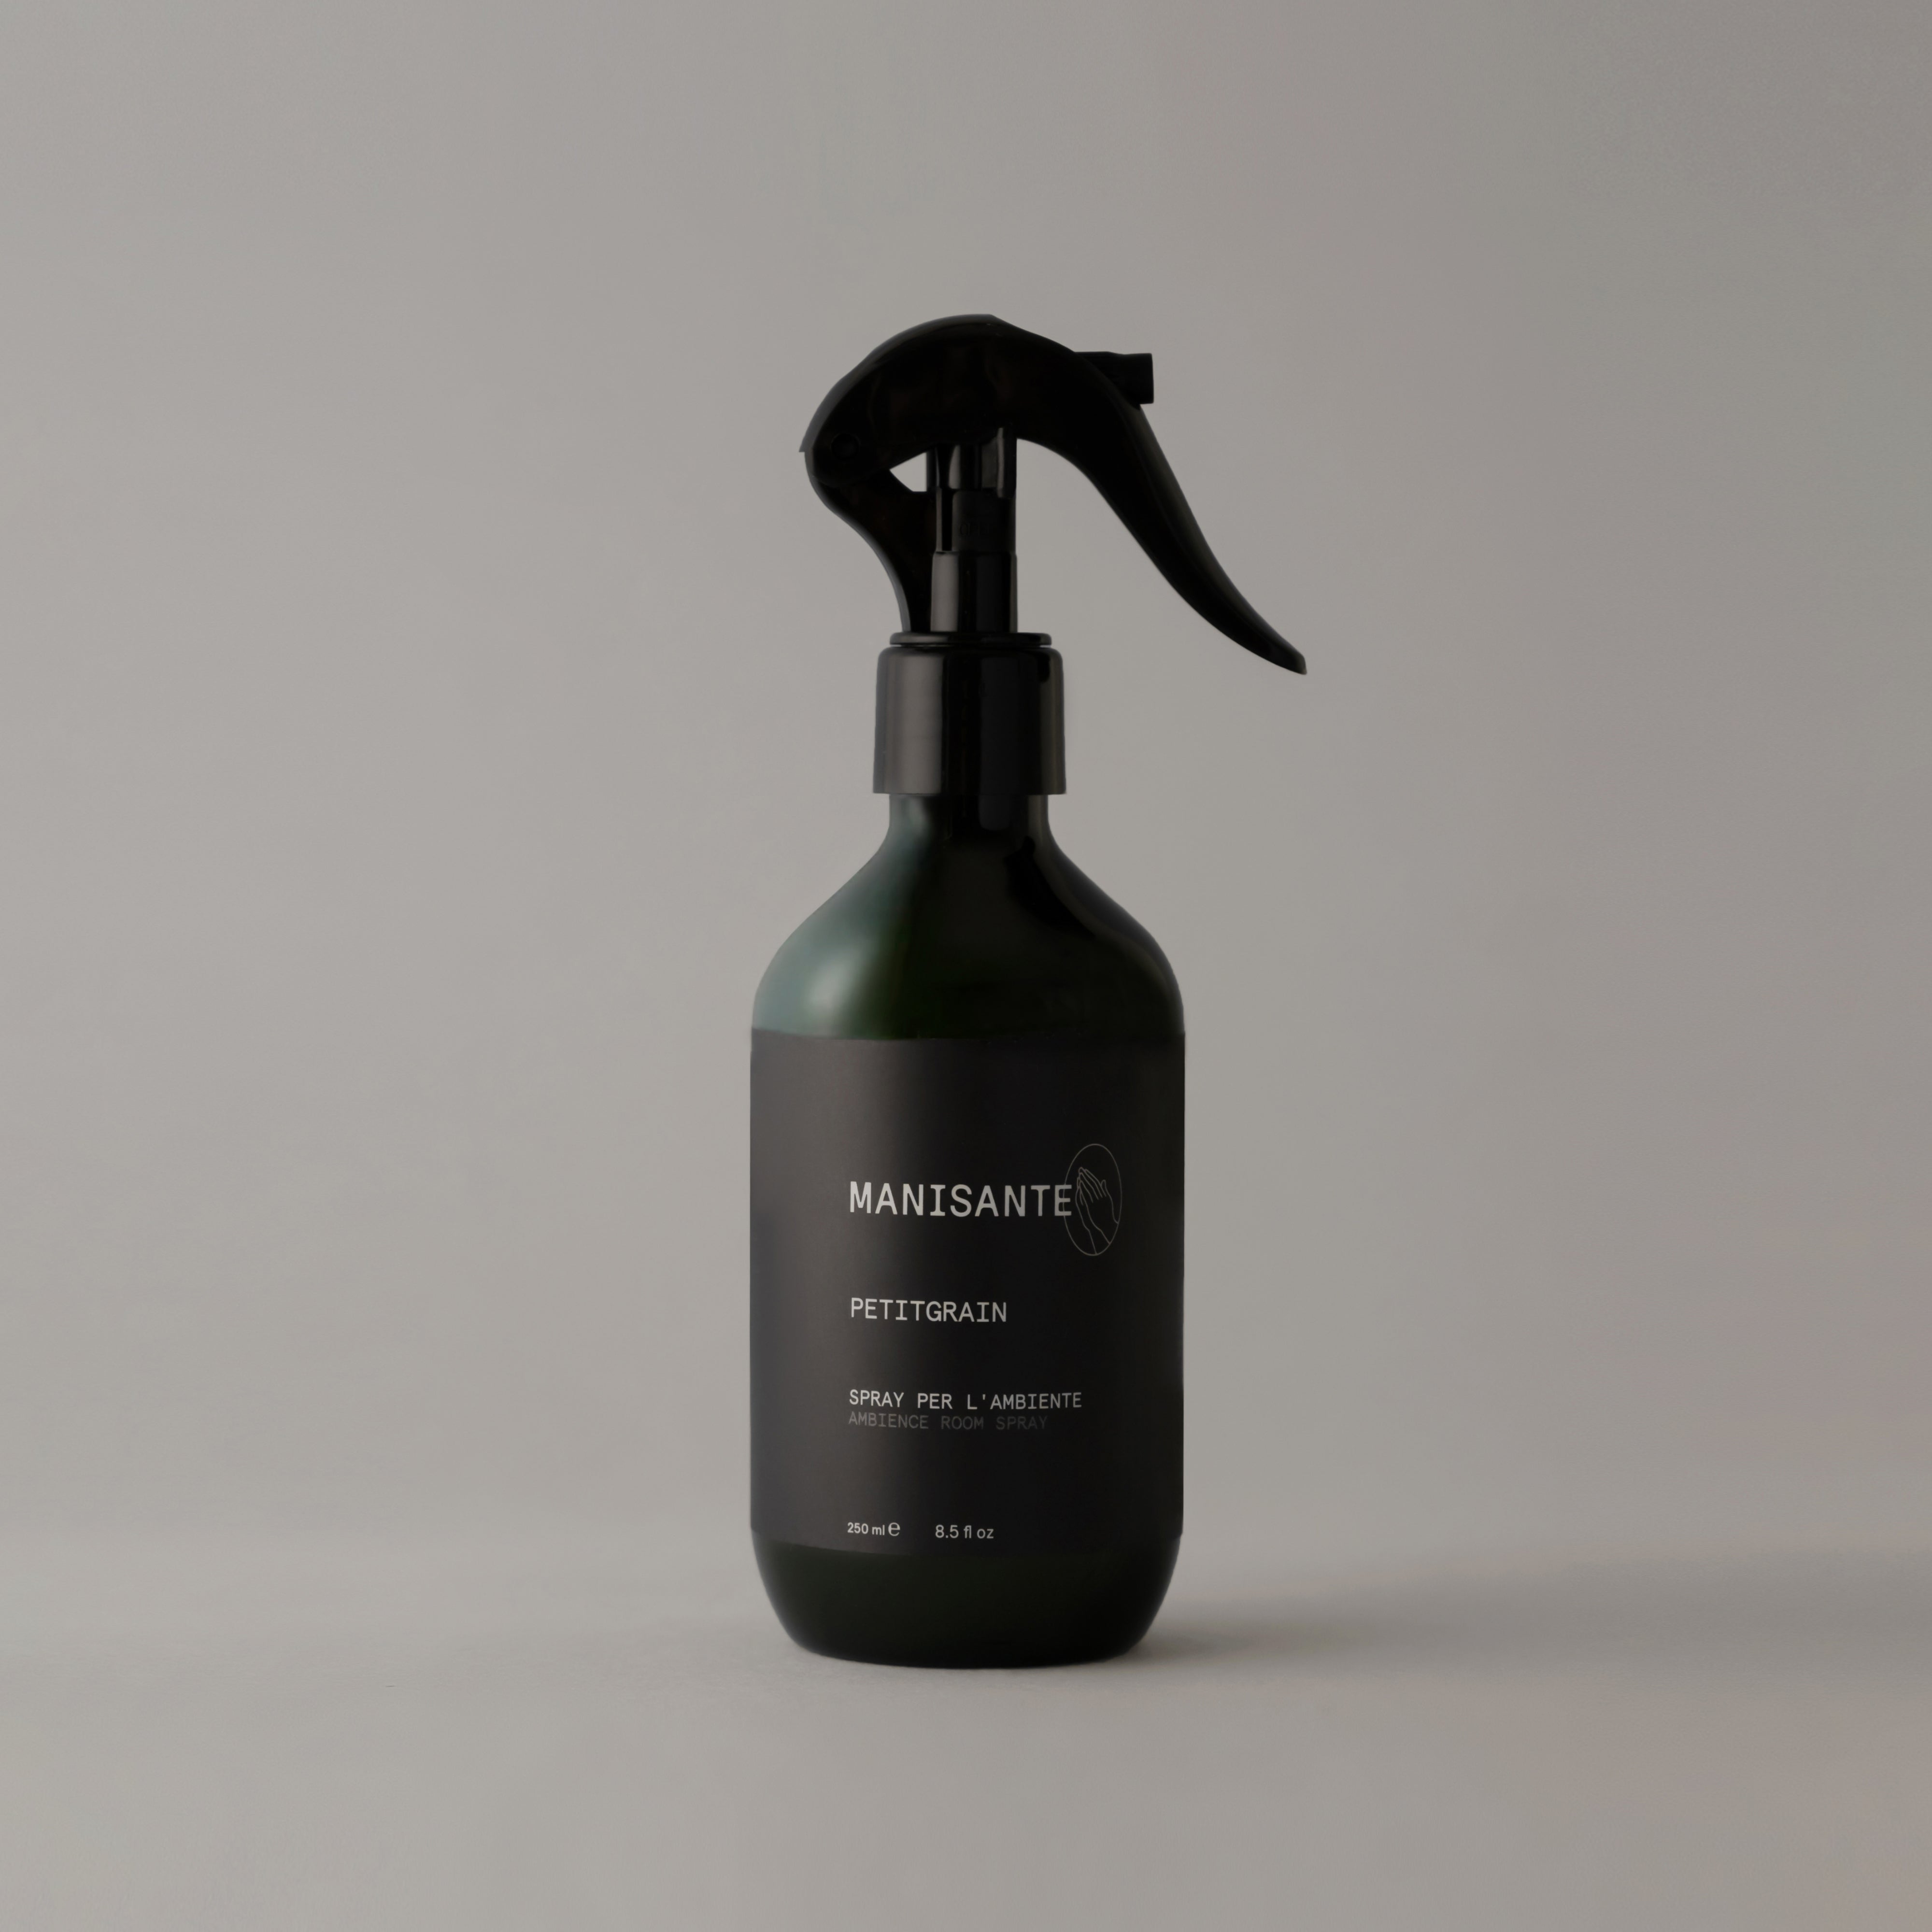 Petitgrain / Spray per l'ambiente